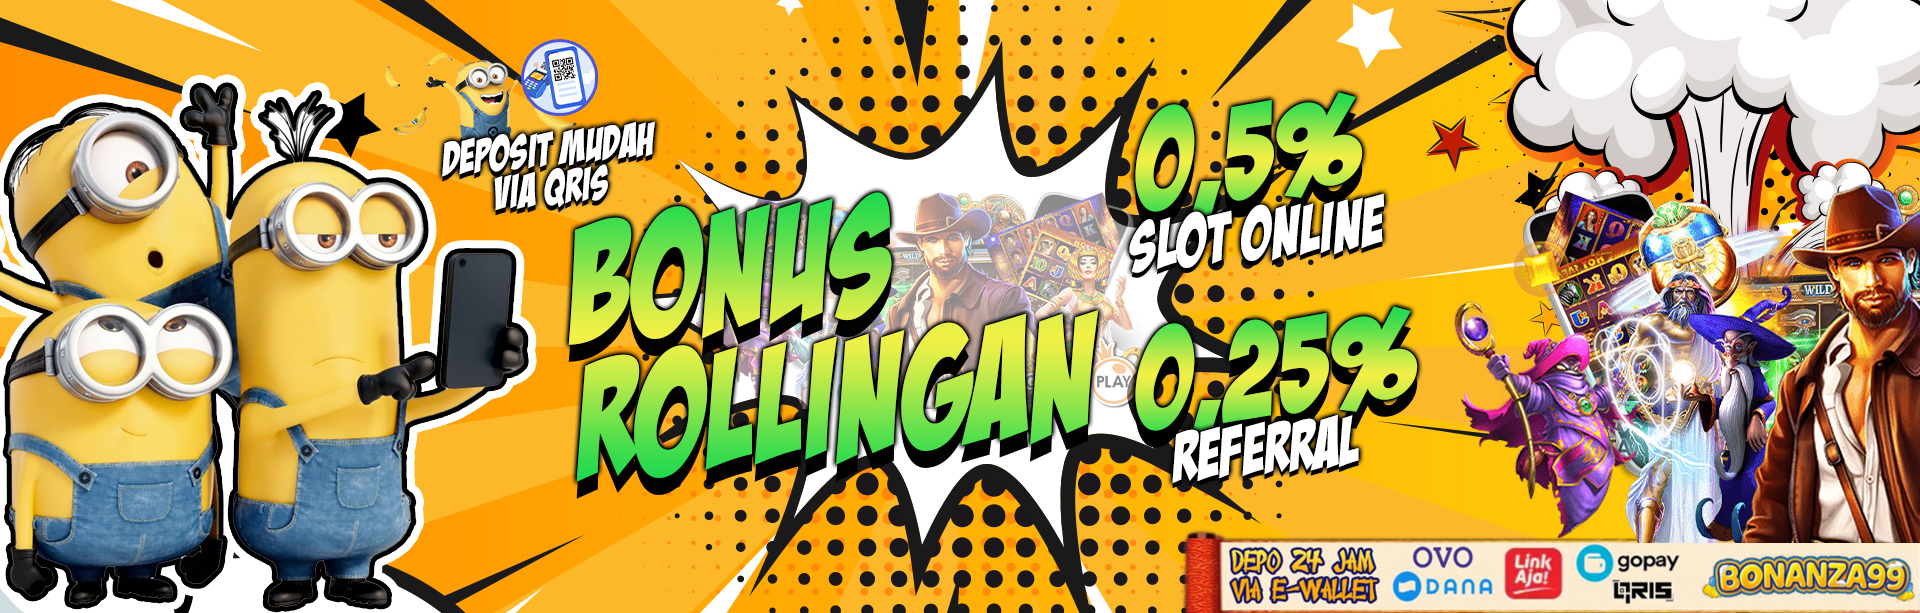 Bonus Rollingan Slot 0.5 & Refferal 0.25